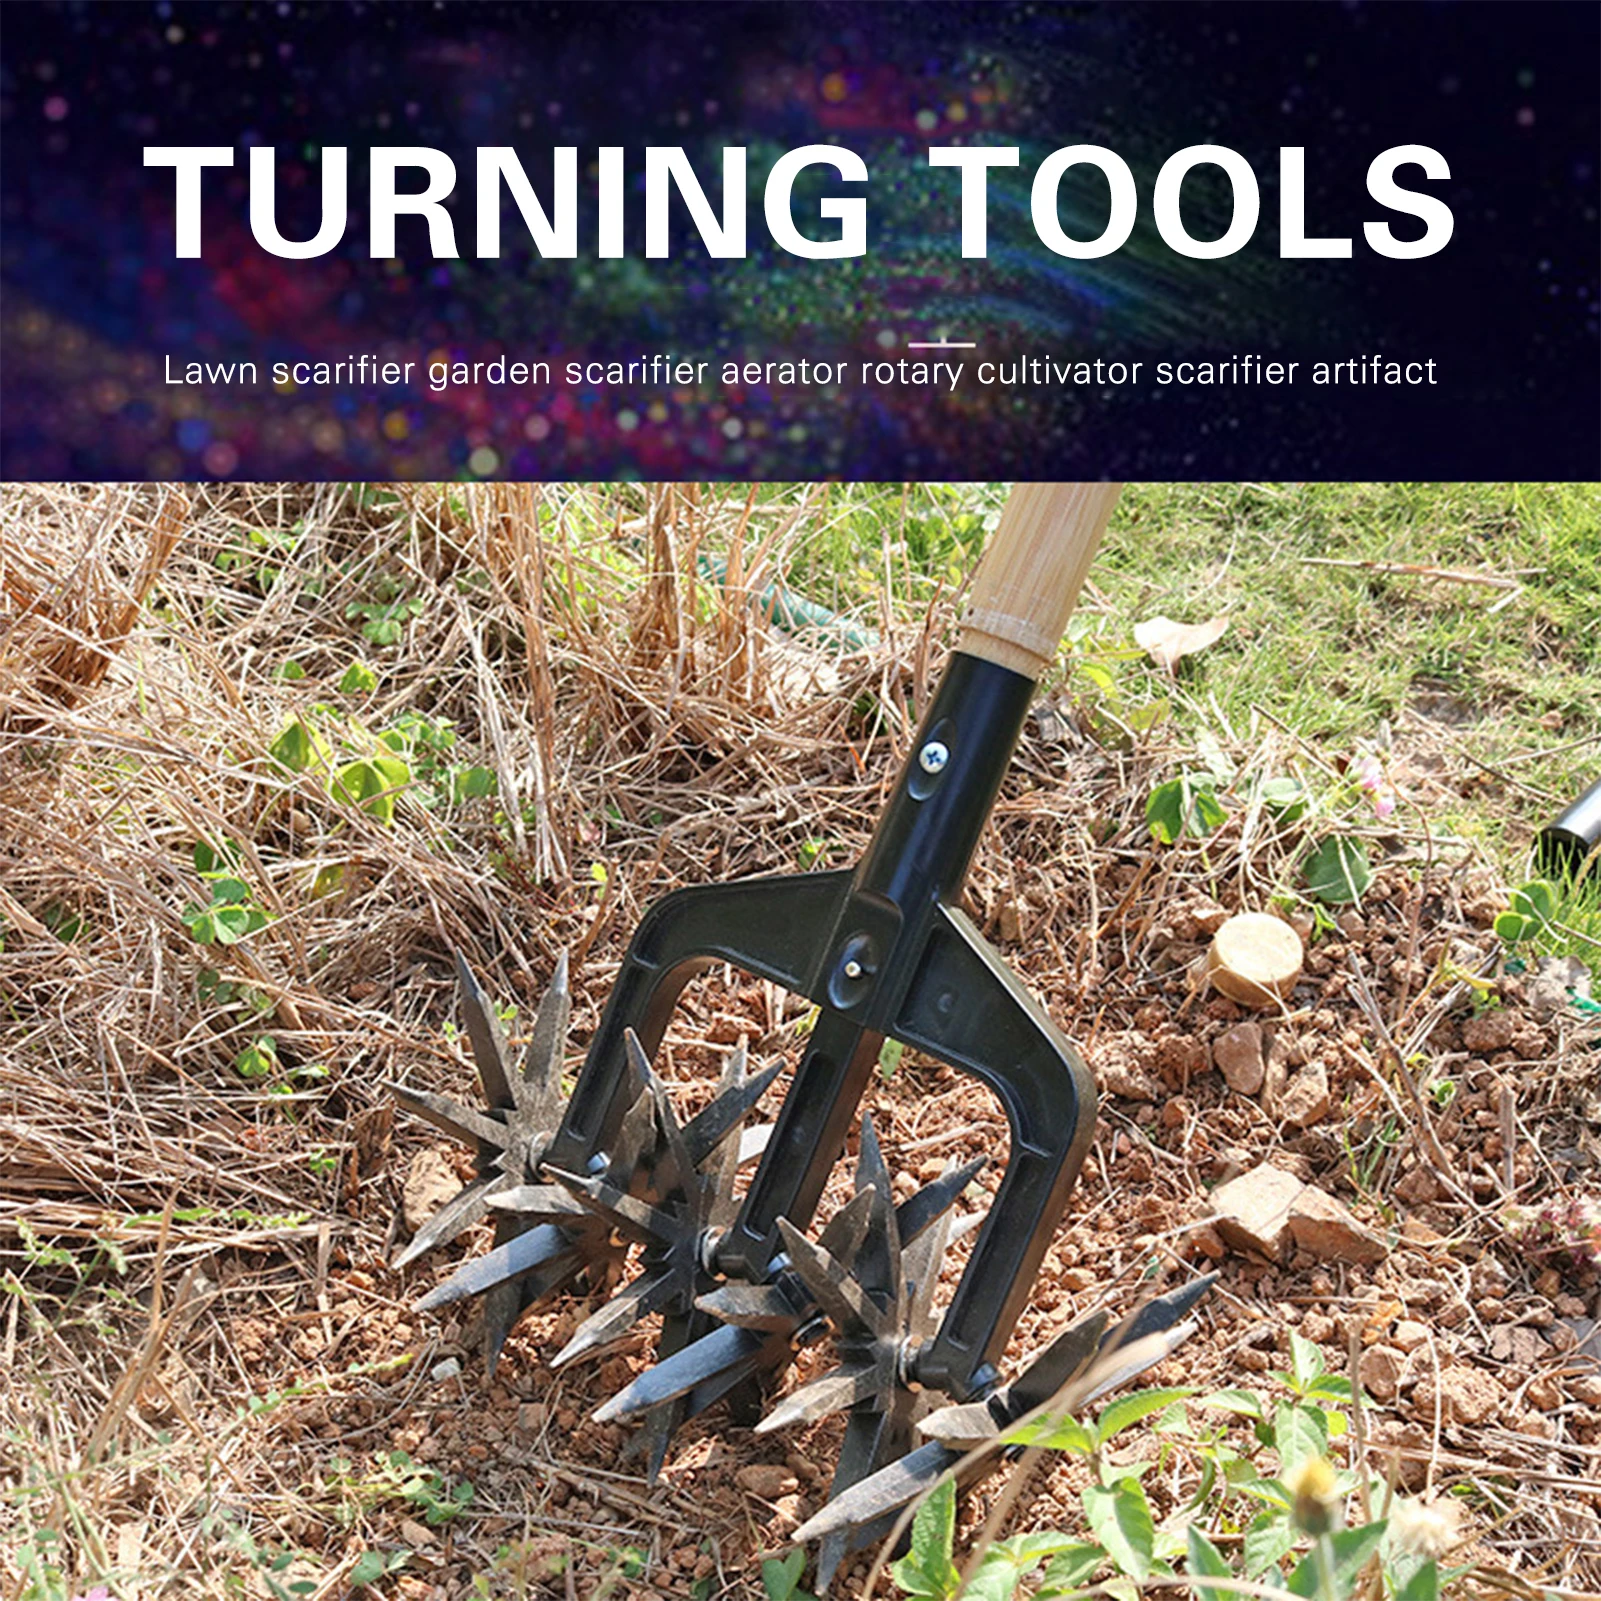 Культиватор: важный инструмент для обработки почвы в саду